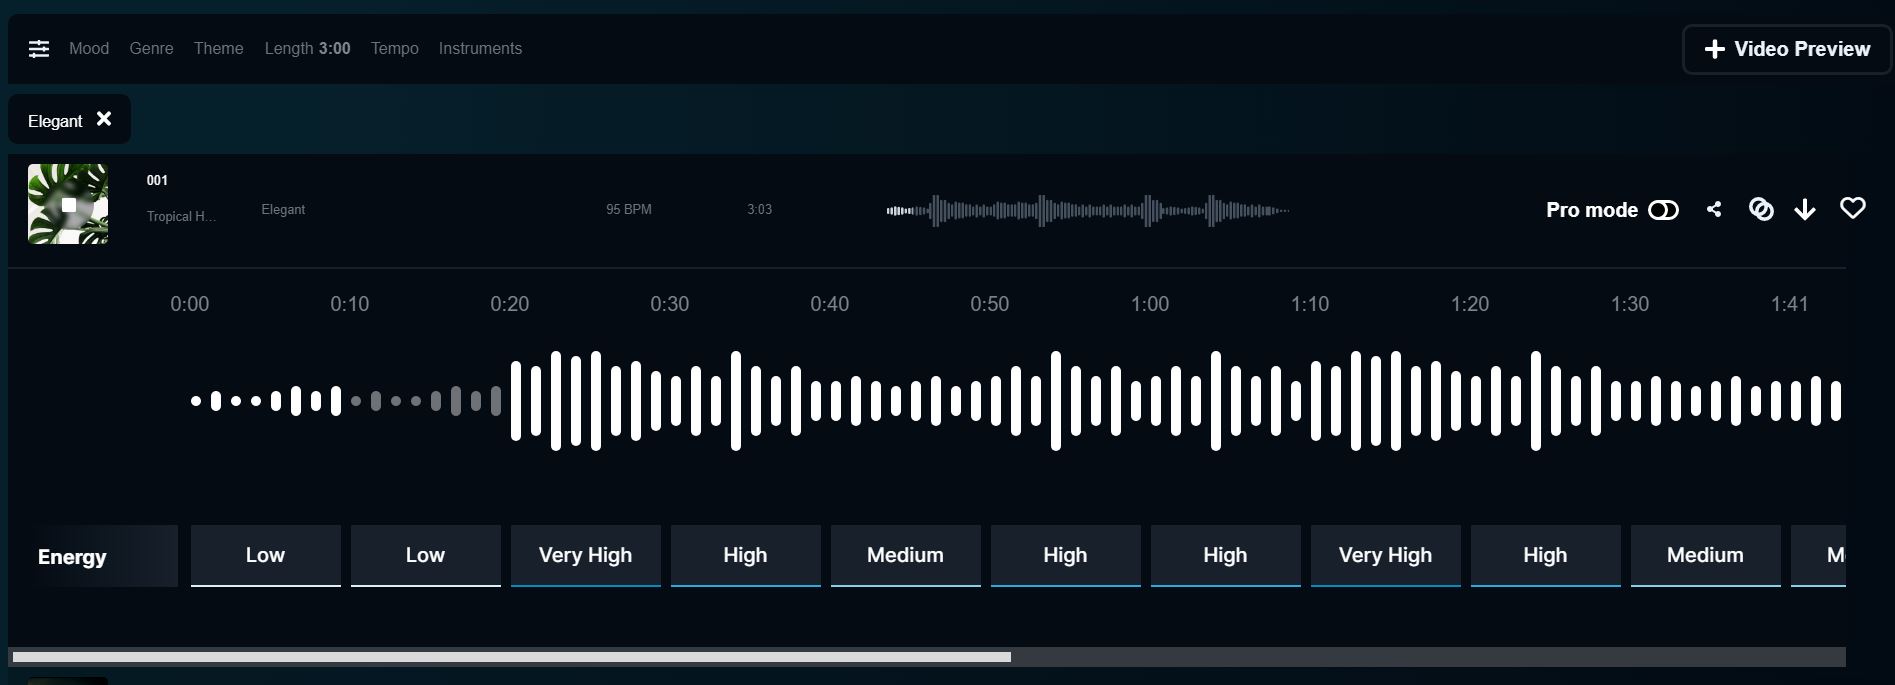 Soundraw - Musiques créées Zoom - IA pour générer de la musique